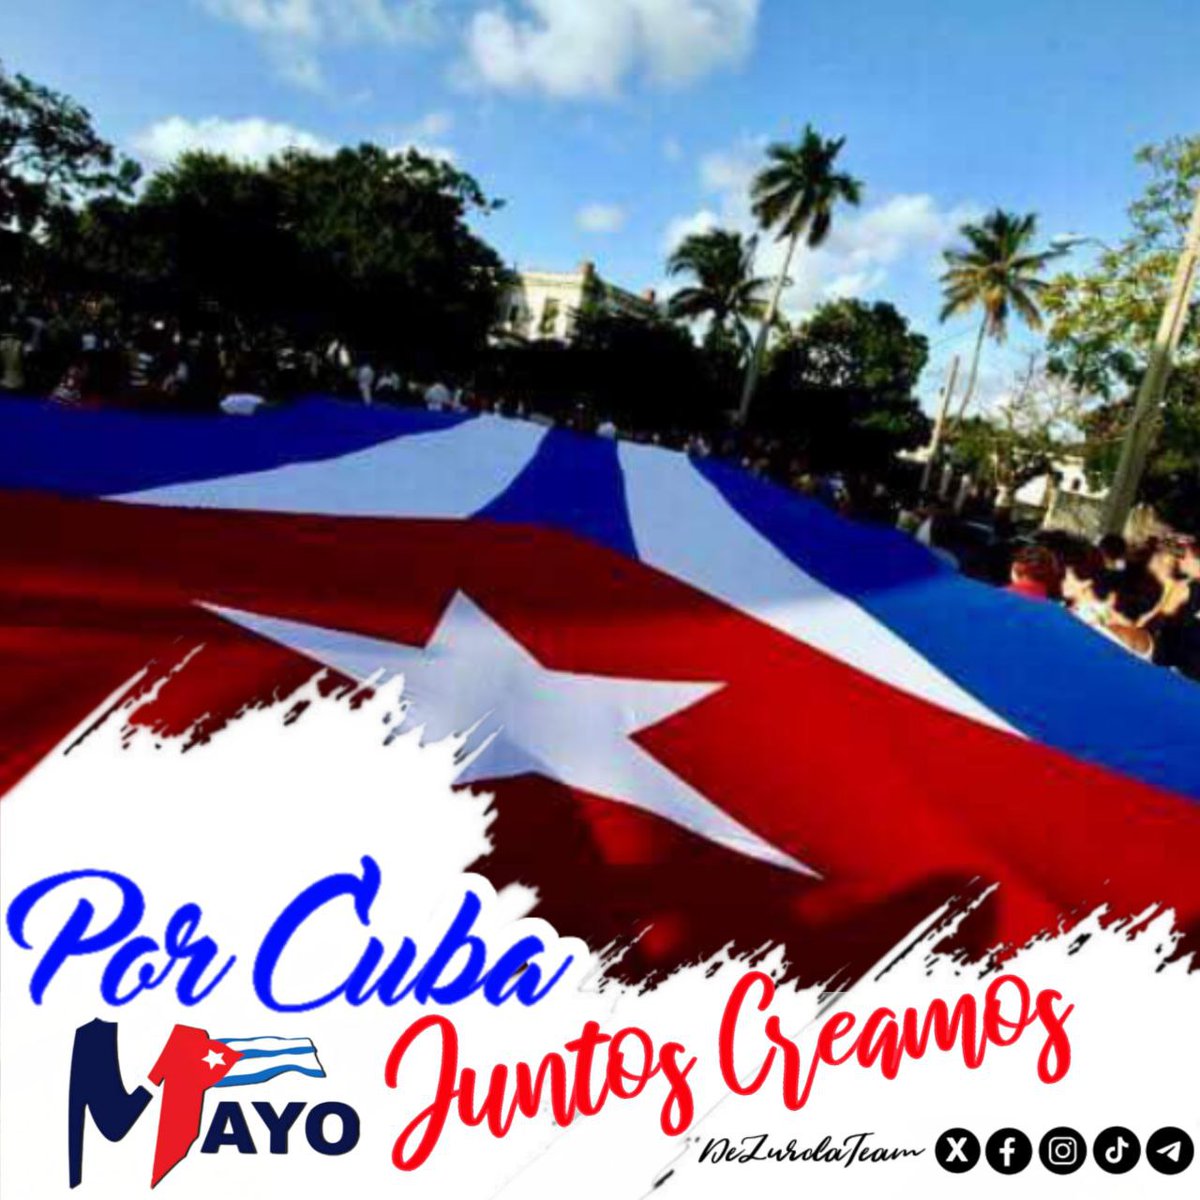 🇨🇺A pocas horas de celebrar el mayor acontecimiento del pueblo trabajador, se ultiman detalles en las principales plazas para acoger a la multitud de cubanos q celebraremos los 65 años del 1er primer desfile. #PorCubaJuntosCreamos #1Mayo #DeZurdaTeam @DeZurdaTeam_